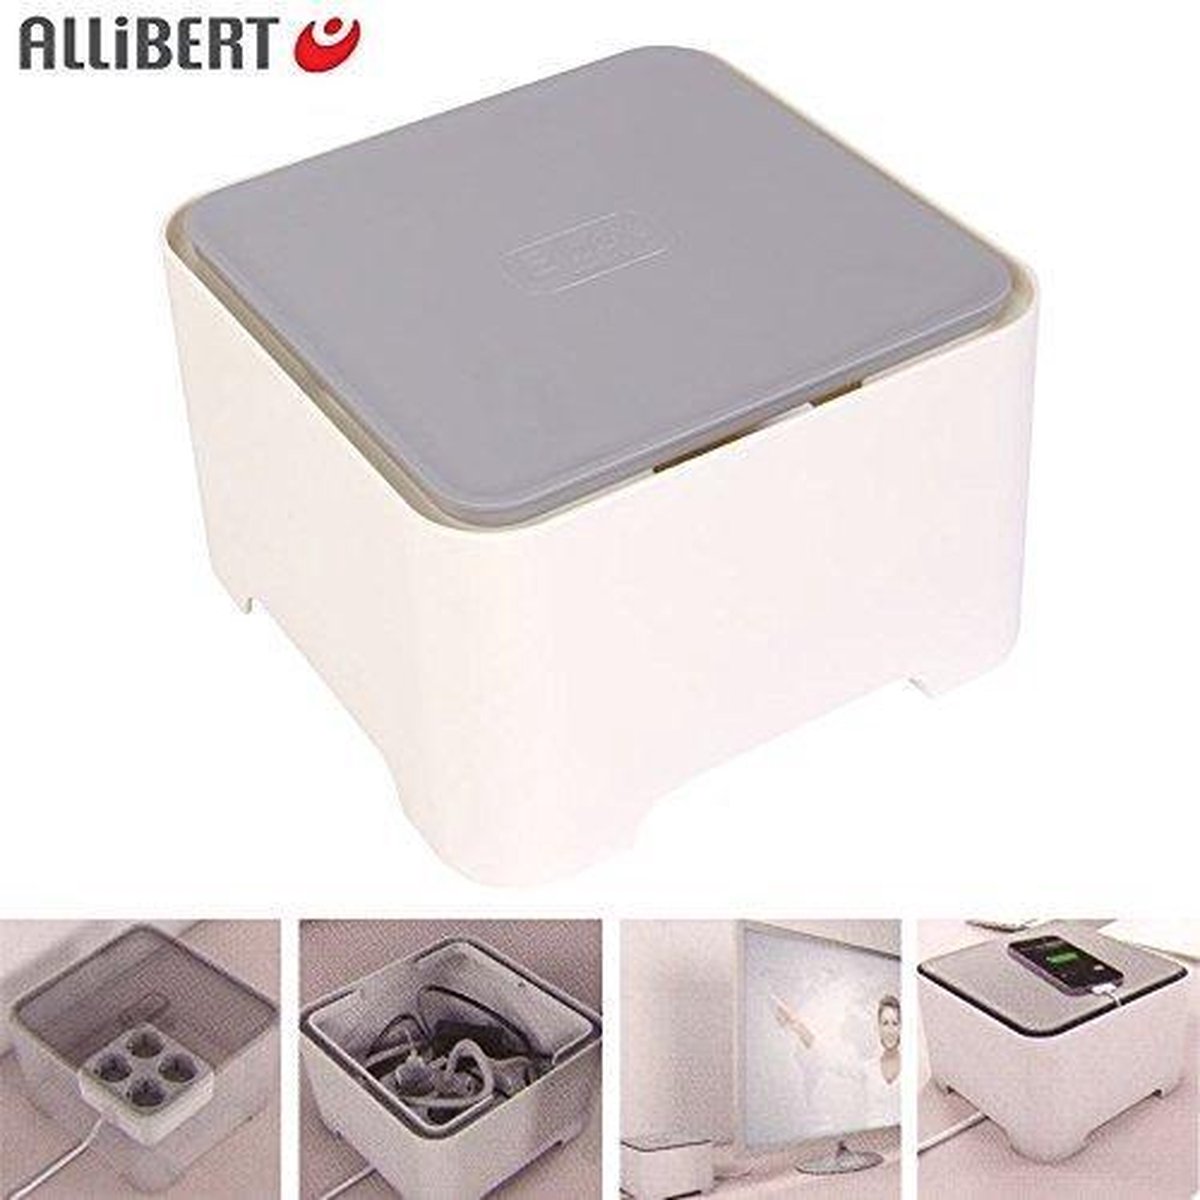 Allibert kabelbox kabedoos opbergbox 'E Box Vierkant' wit/grijs | bol.com